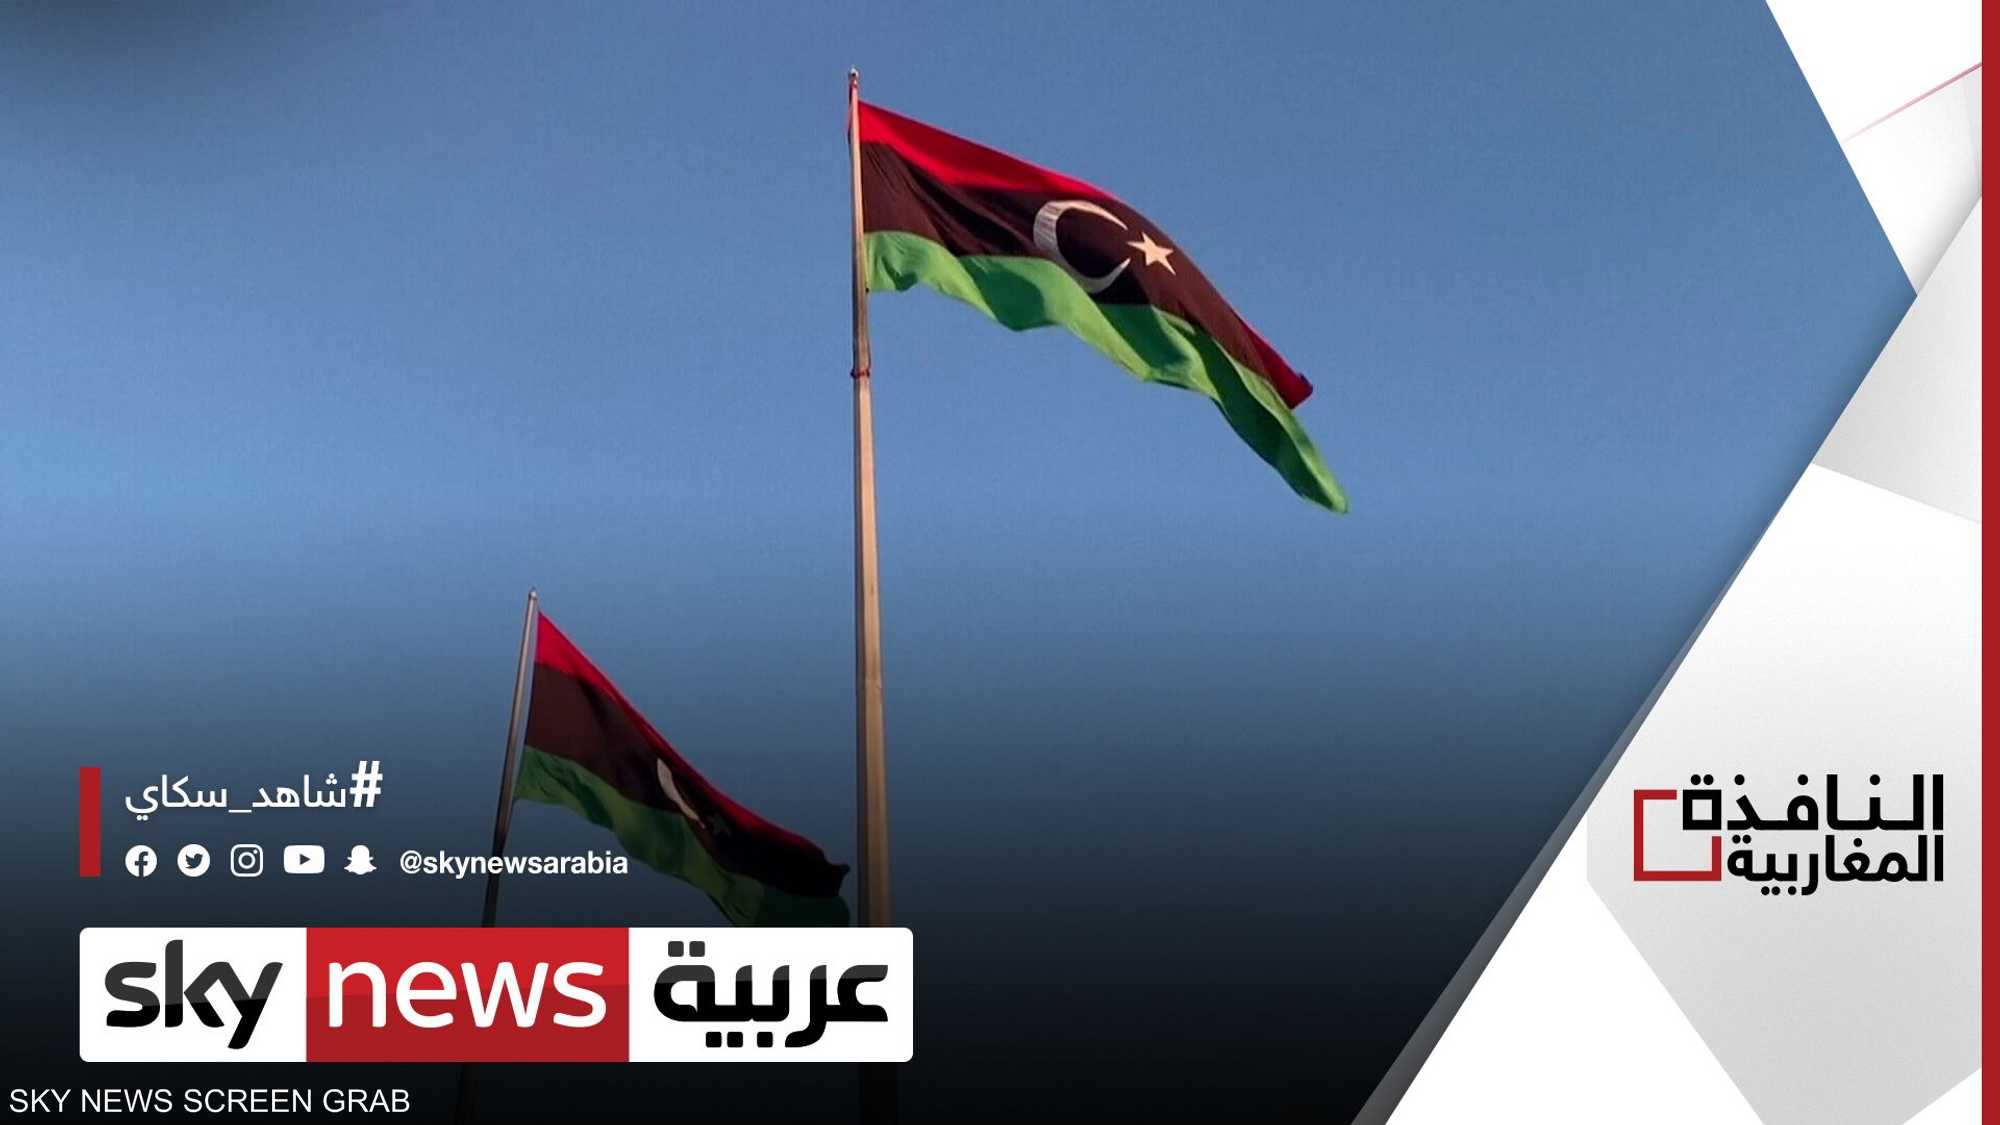 دعوات في ليبيا لإنهاء الانقسام السياسي